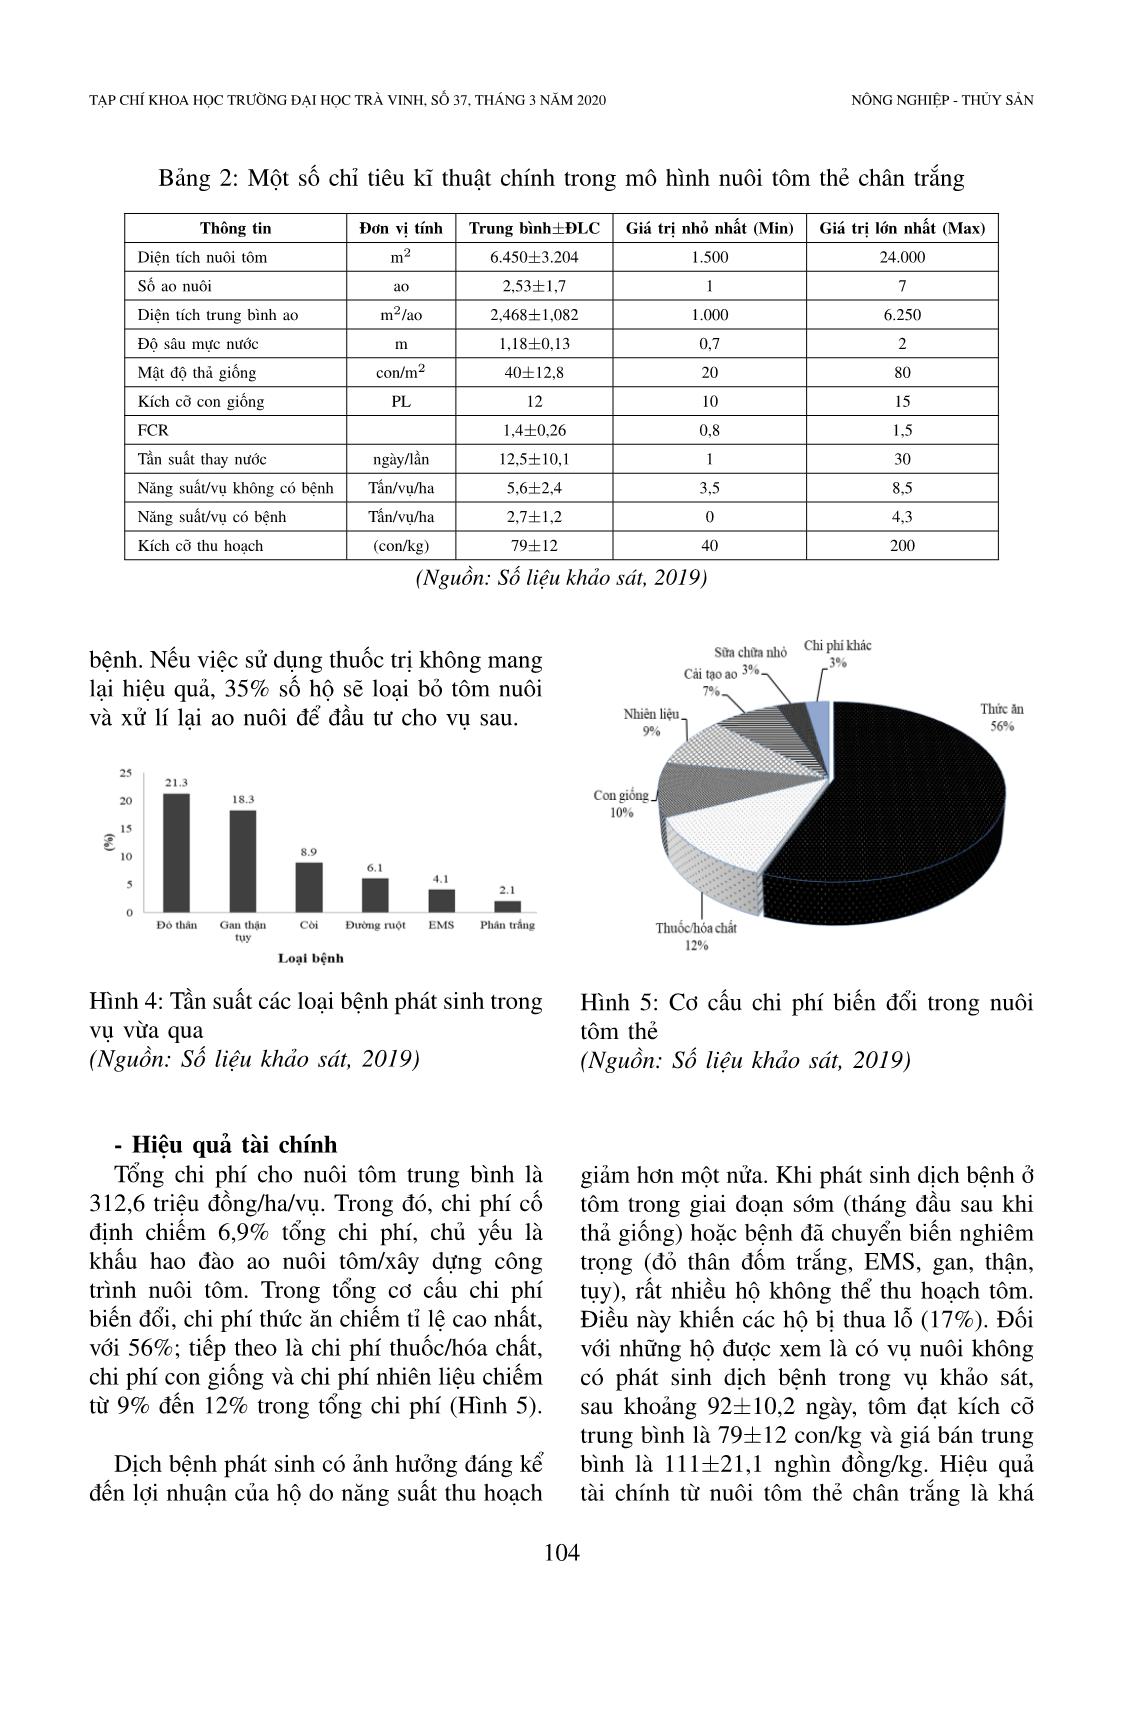 Hiện trạng và vai trò của chứng nhận Vietgap trong nuôi tôm: Nghiên cứu trường hợp nuôi tôm thẻ chân trắng ở tỉnh Sóc Trăng, Việt Nam trang 7